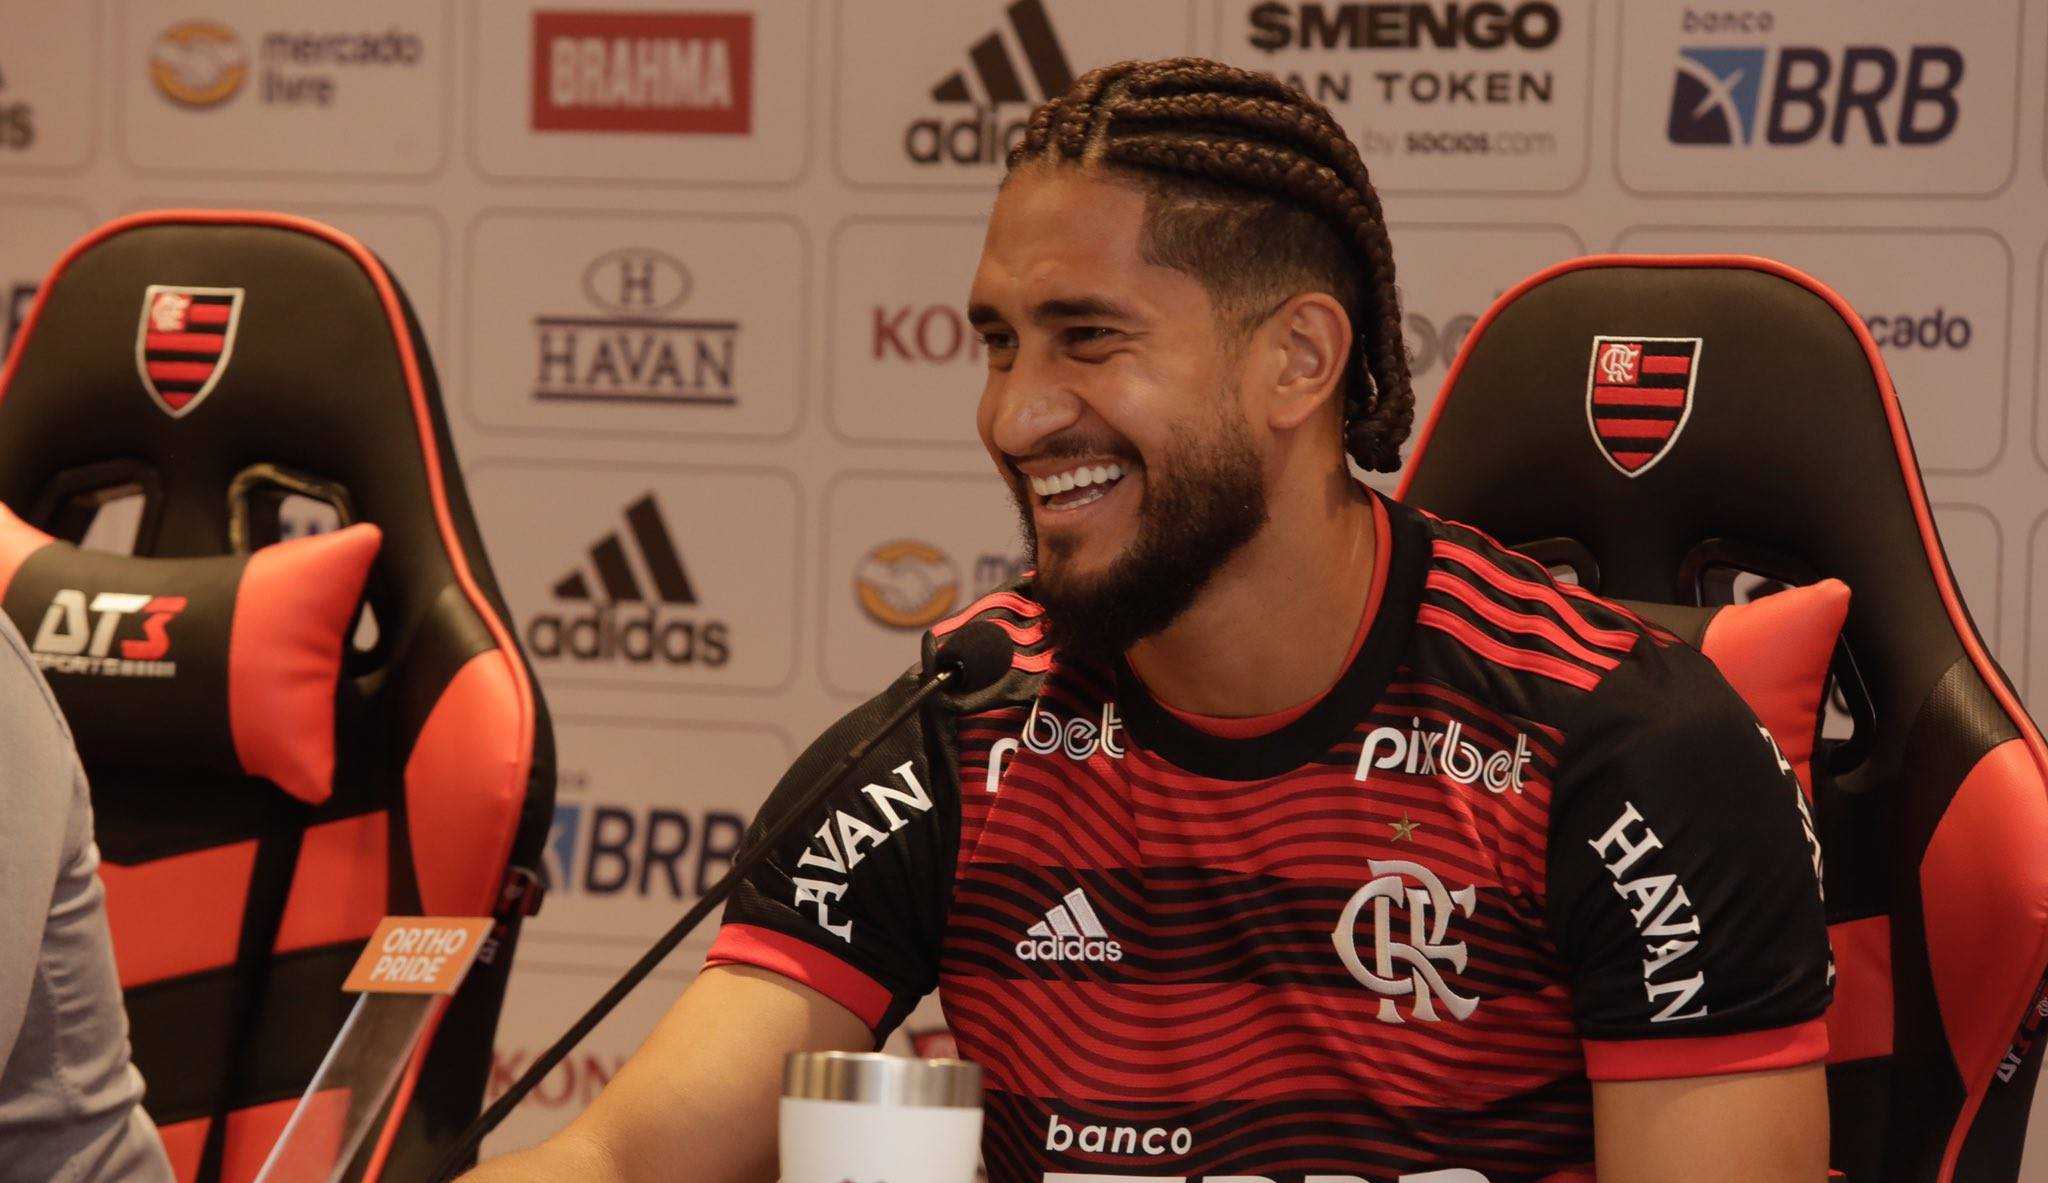 Pablo tem lesão no joelho em seu primeiro treino no Flamengo